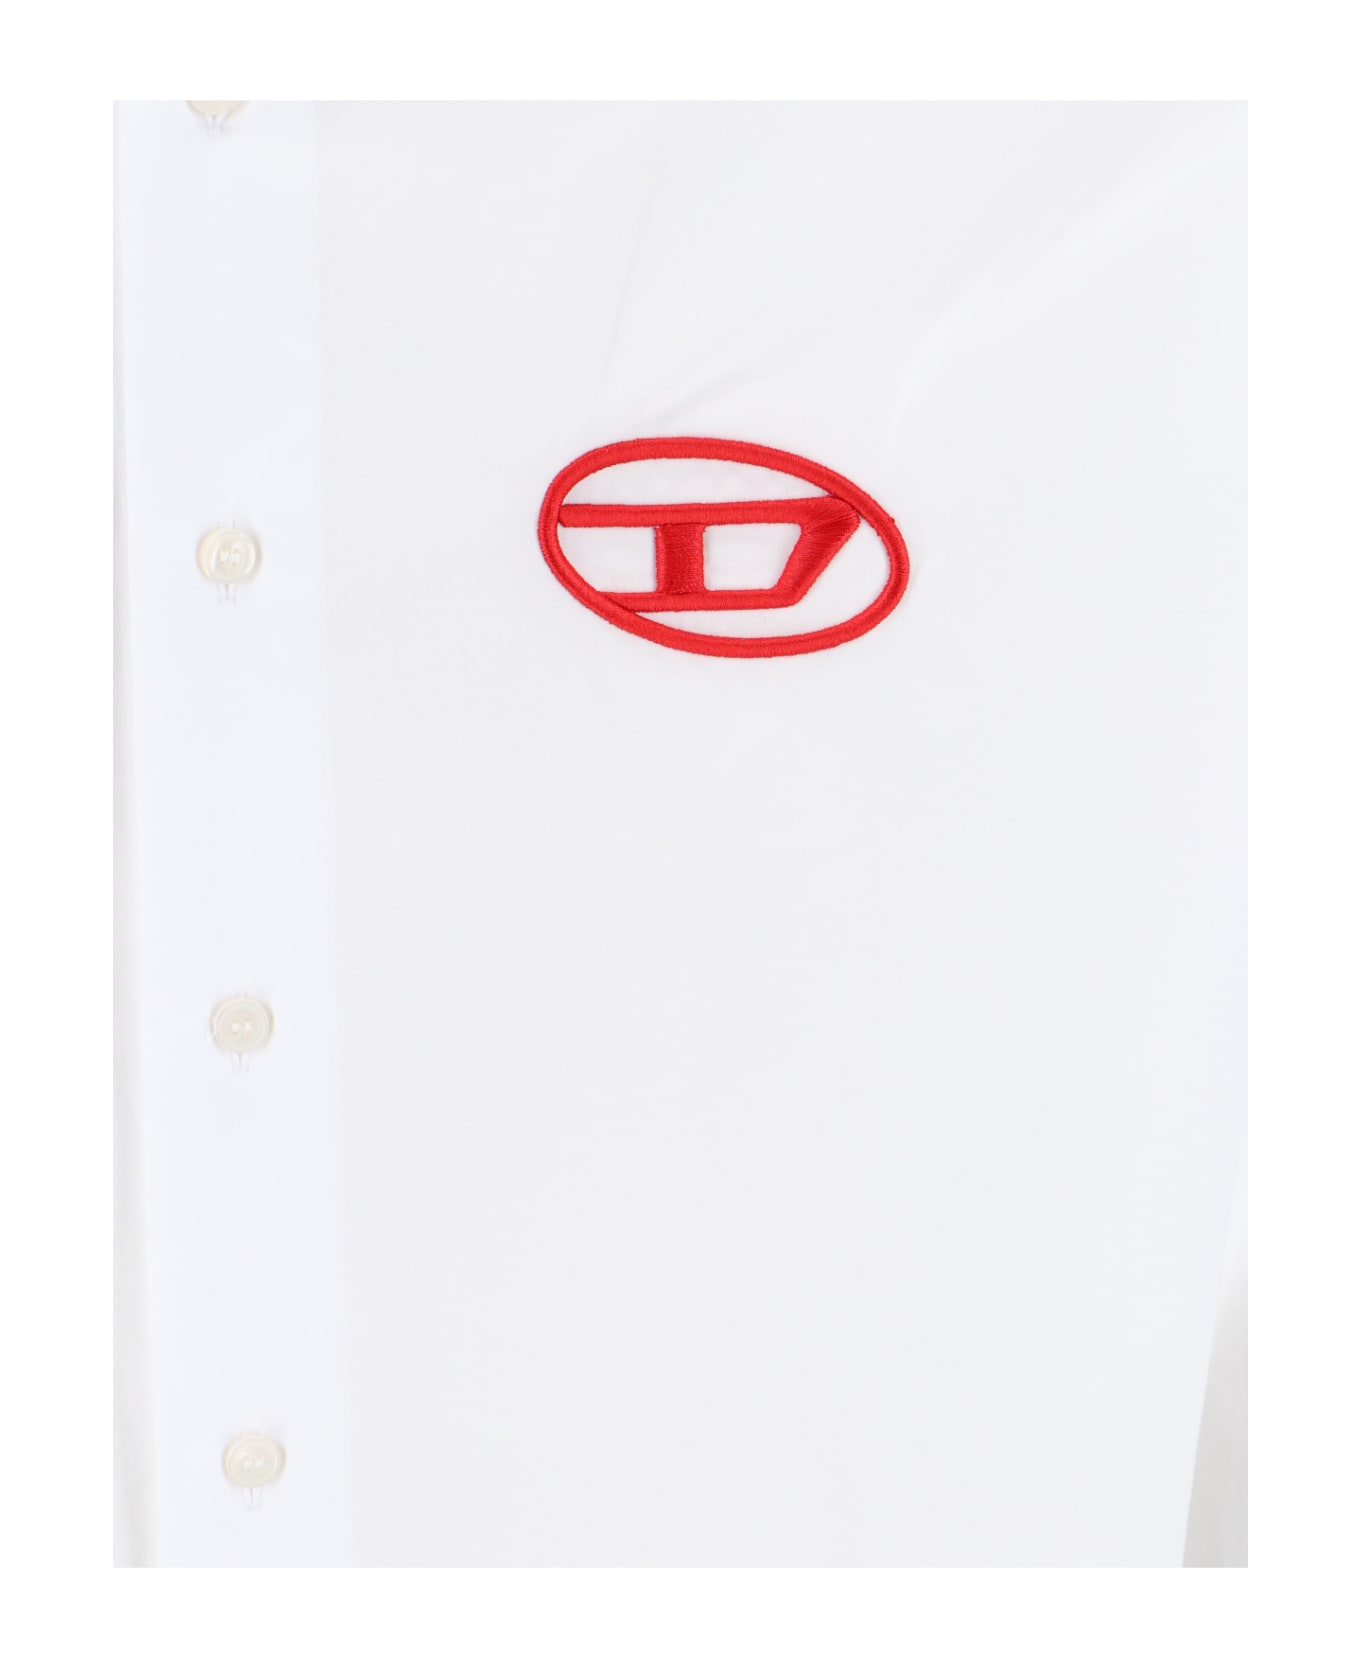 Diesel 'oval-d' Logo Shirt - White シャツ